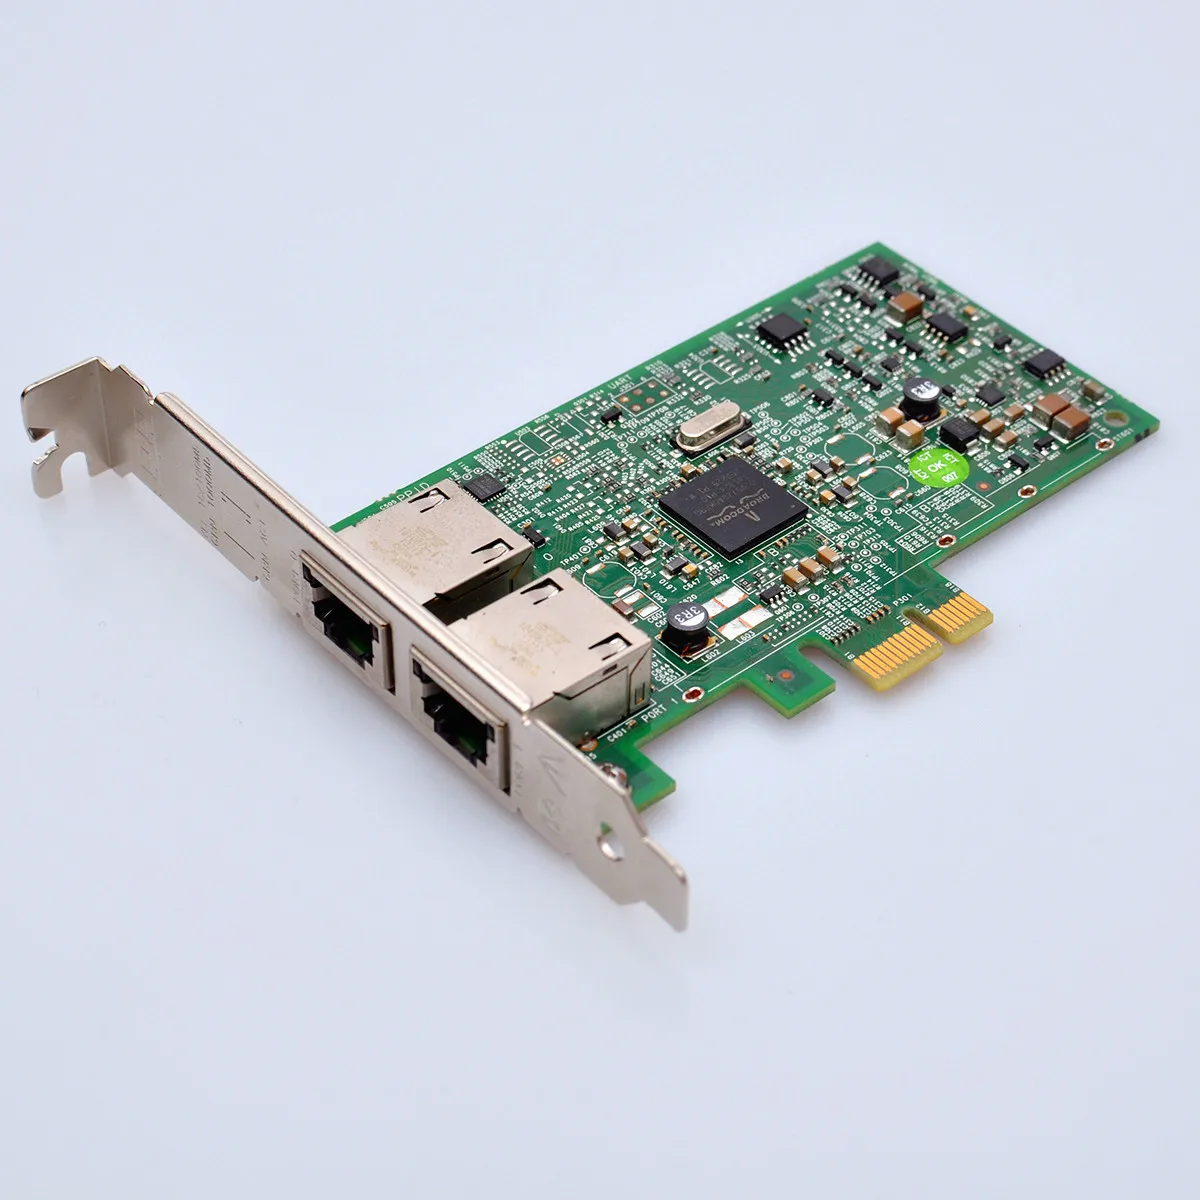 מקורי Broadcom 5720 BCM5720 557M9 כפול 2 יציאת רשת Gigabit באינטרנט כרטיס PCI-E X1 עבור Dell גרסה 00FCGN 0FCGN - 0